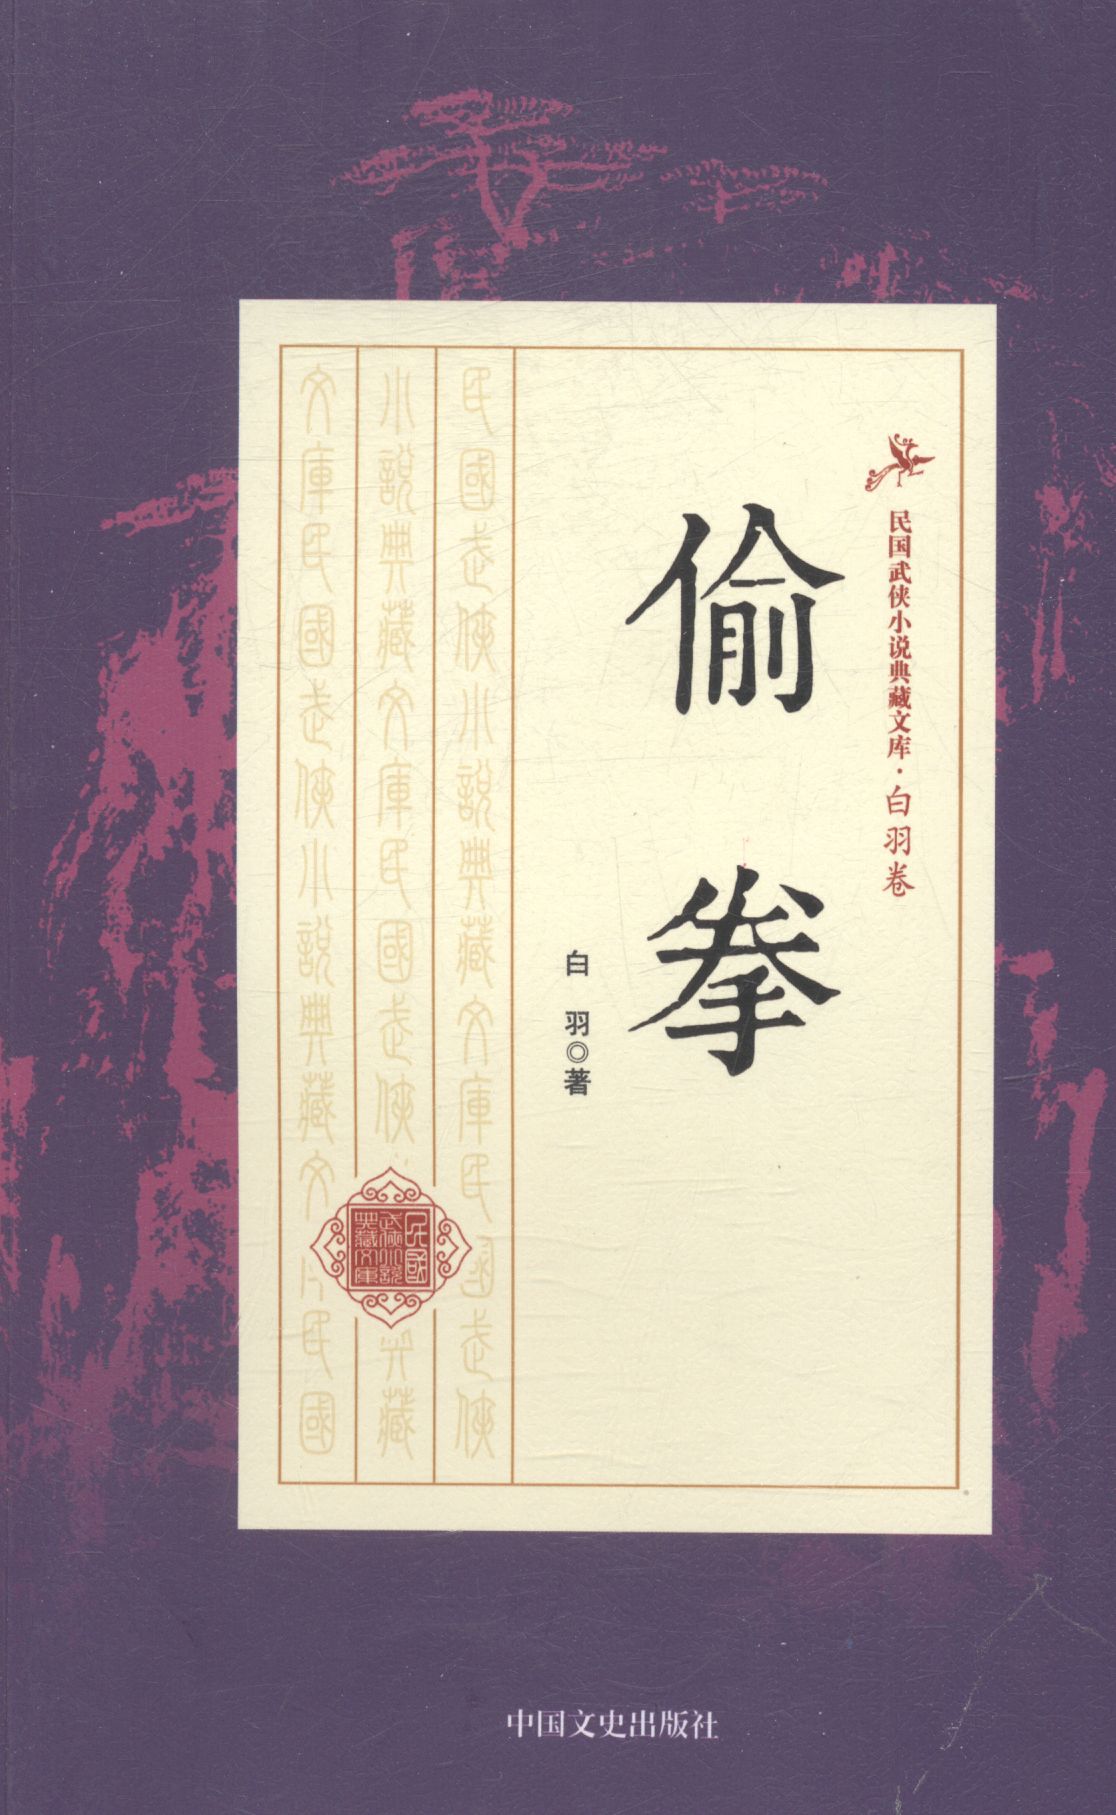 偷拳 小说 白羽著 中国文史出版社 9787503483653 kindle格式下载